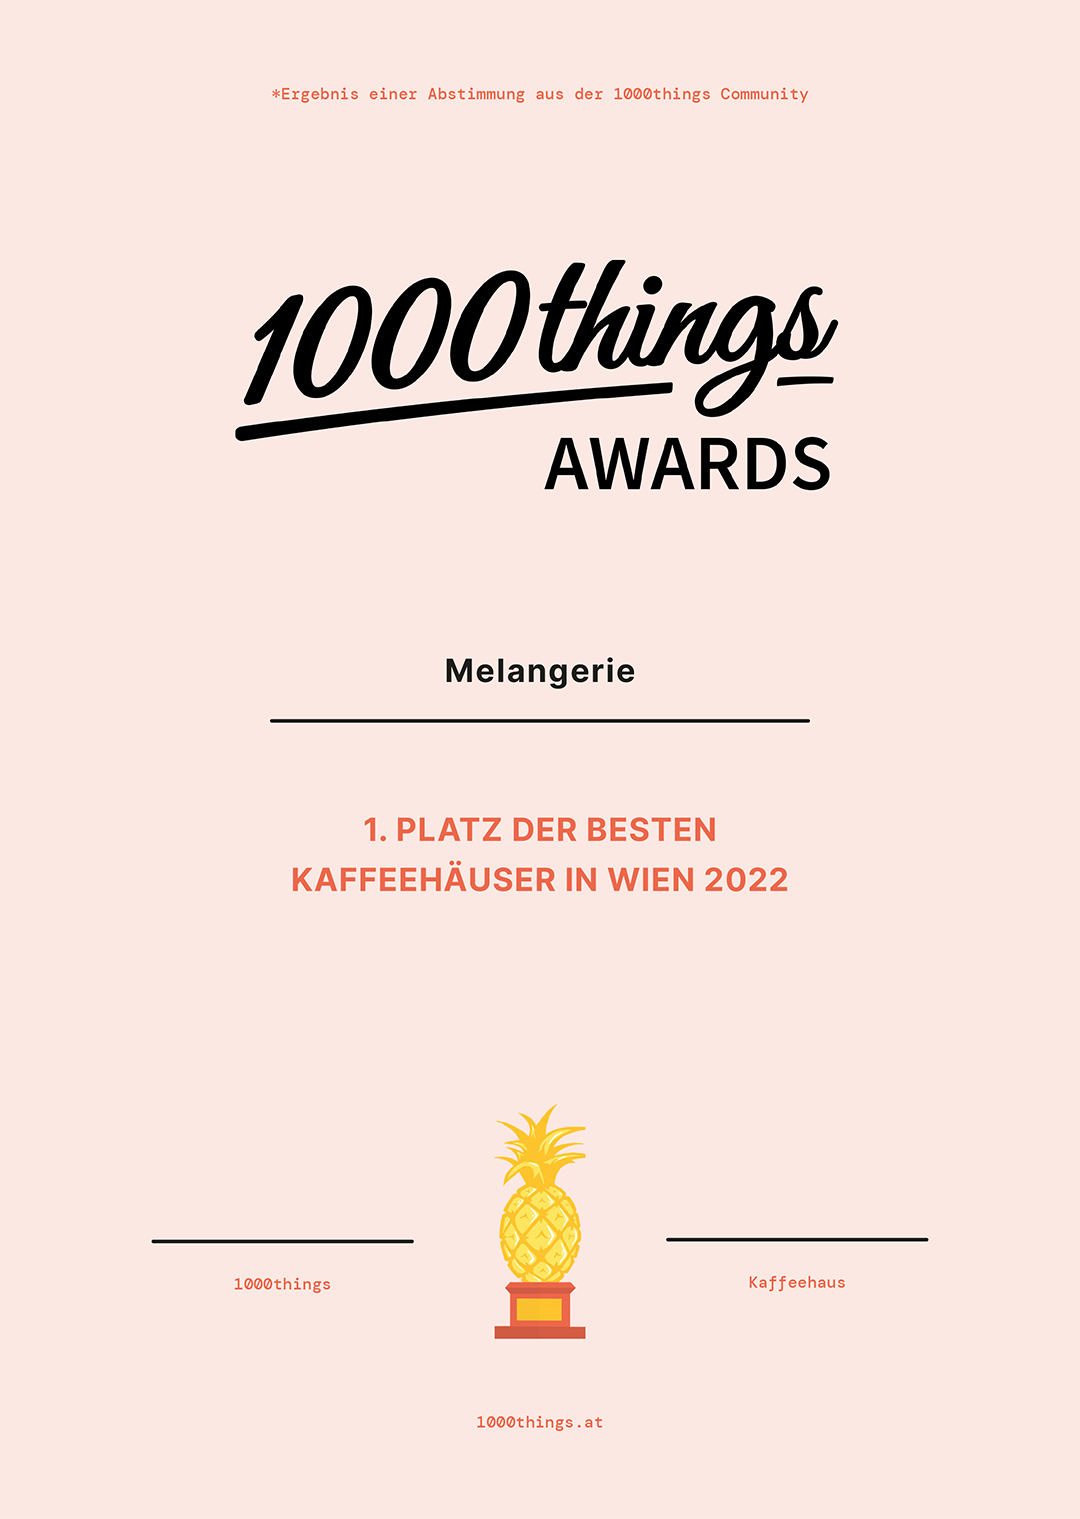 1000things Award für die Melangerie als das beste Kaffeehaus Wien